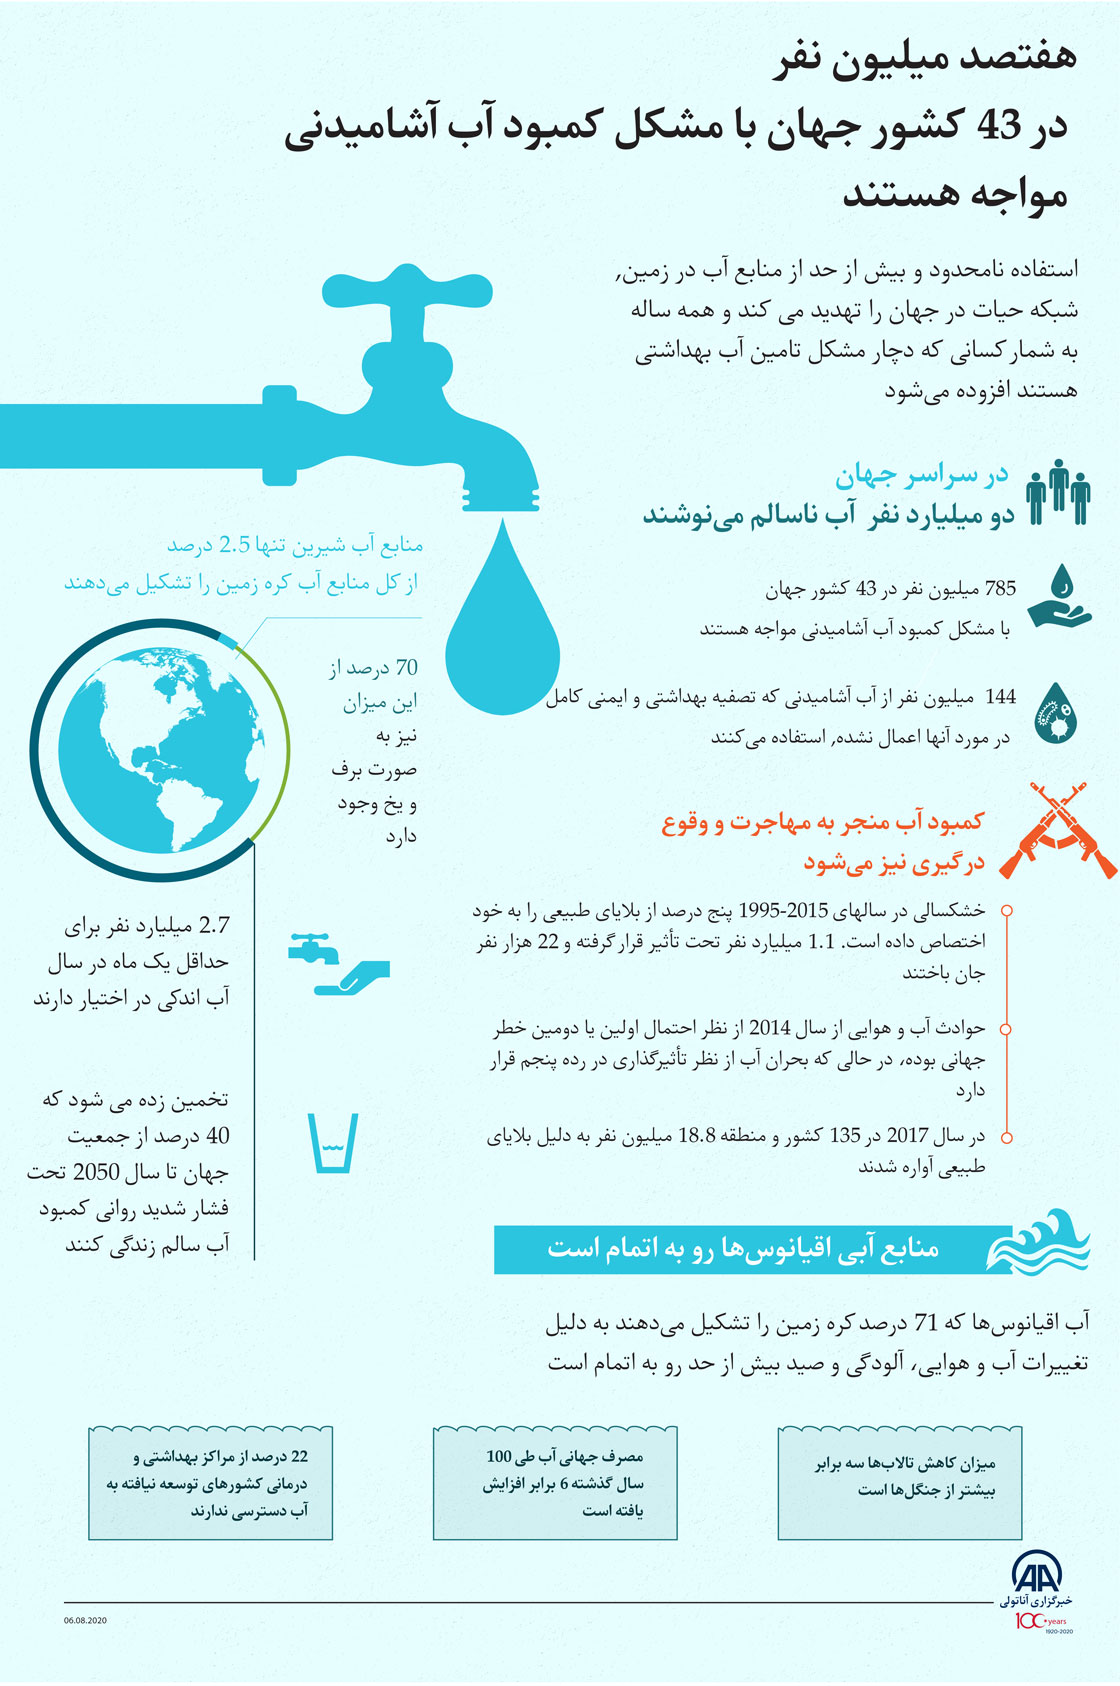 هفتصد میلیون نفر در 43 کشور جهان با مشکل کمبود آب آشامیدنی مواجه هستند